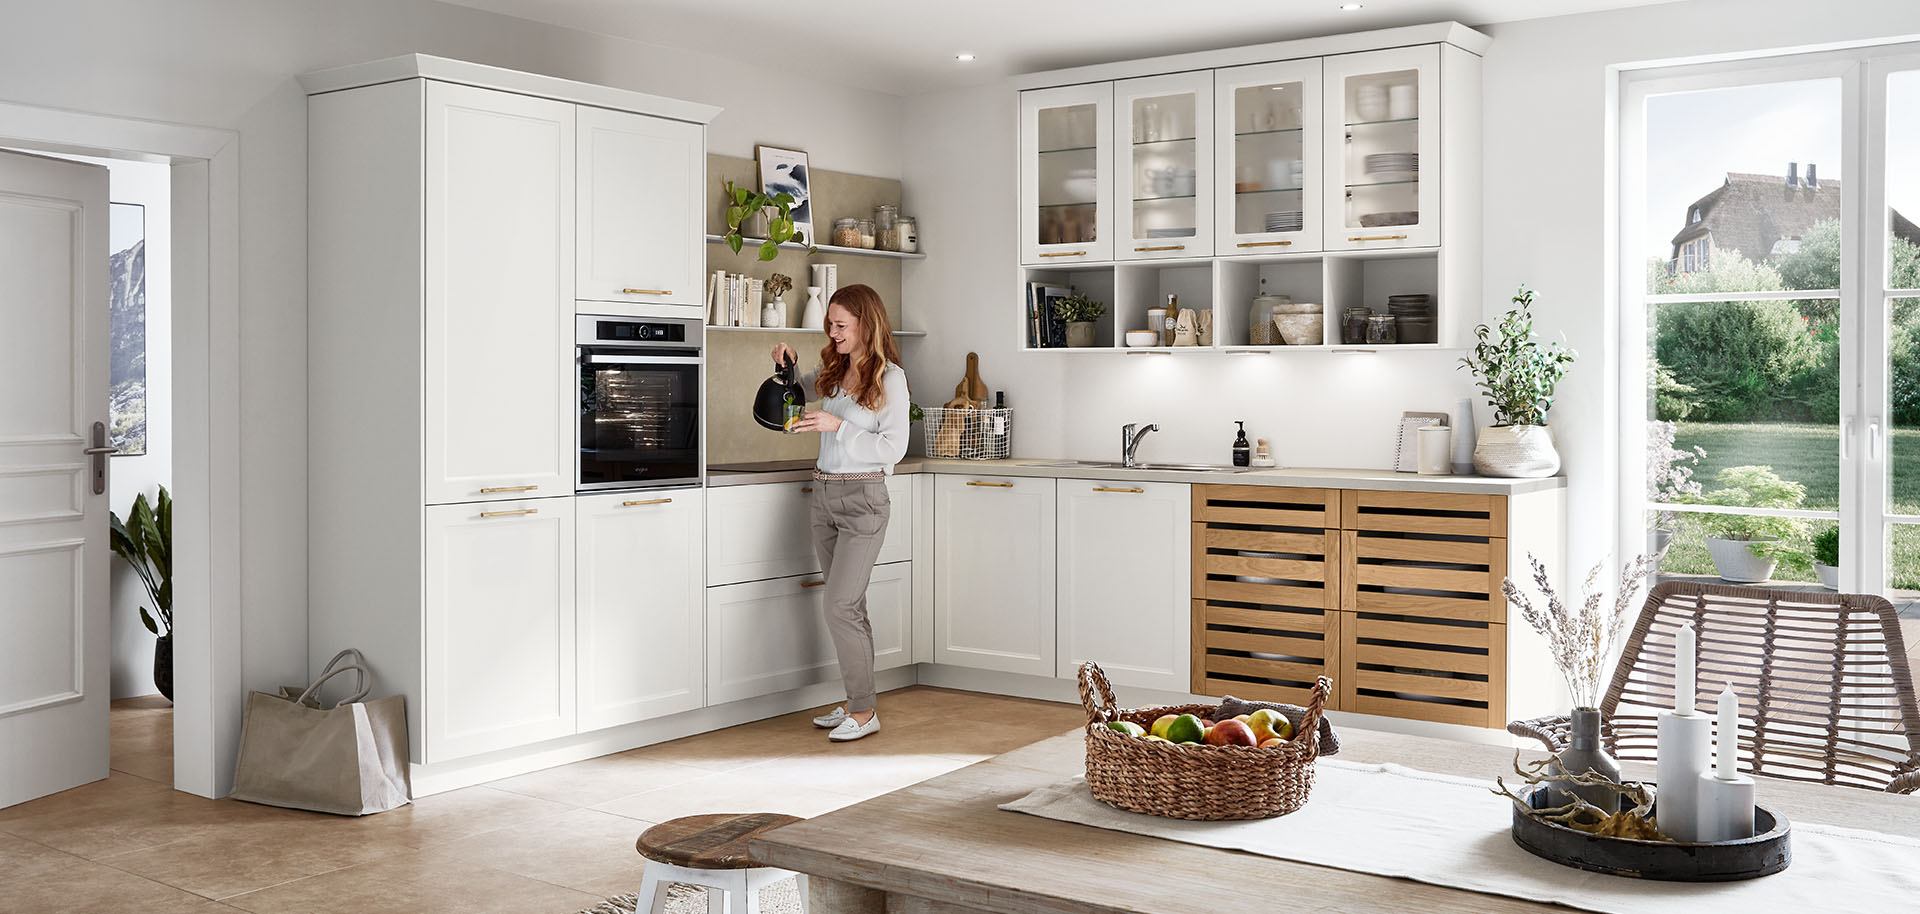 Una cucina luminosa e moderna con armadi bianchi e dettagli in legno. Una persona è in piedi, interagendo con un dispositivo intelligente, in mezzo allo spazio pieno di luce solare.